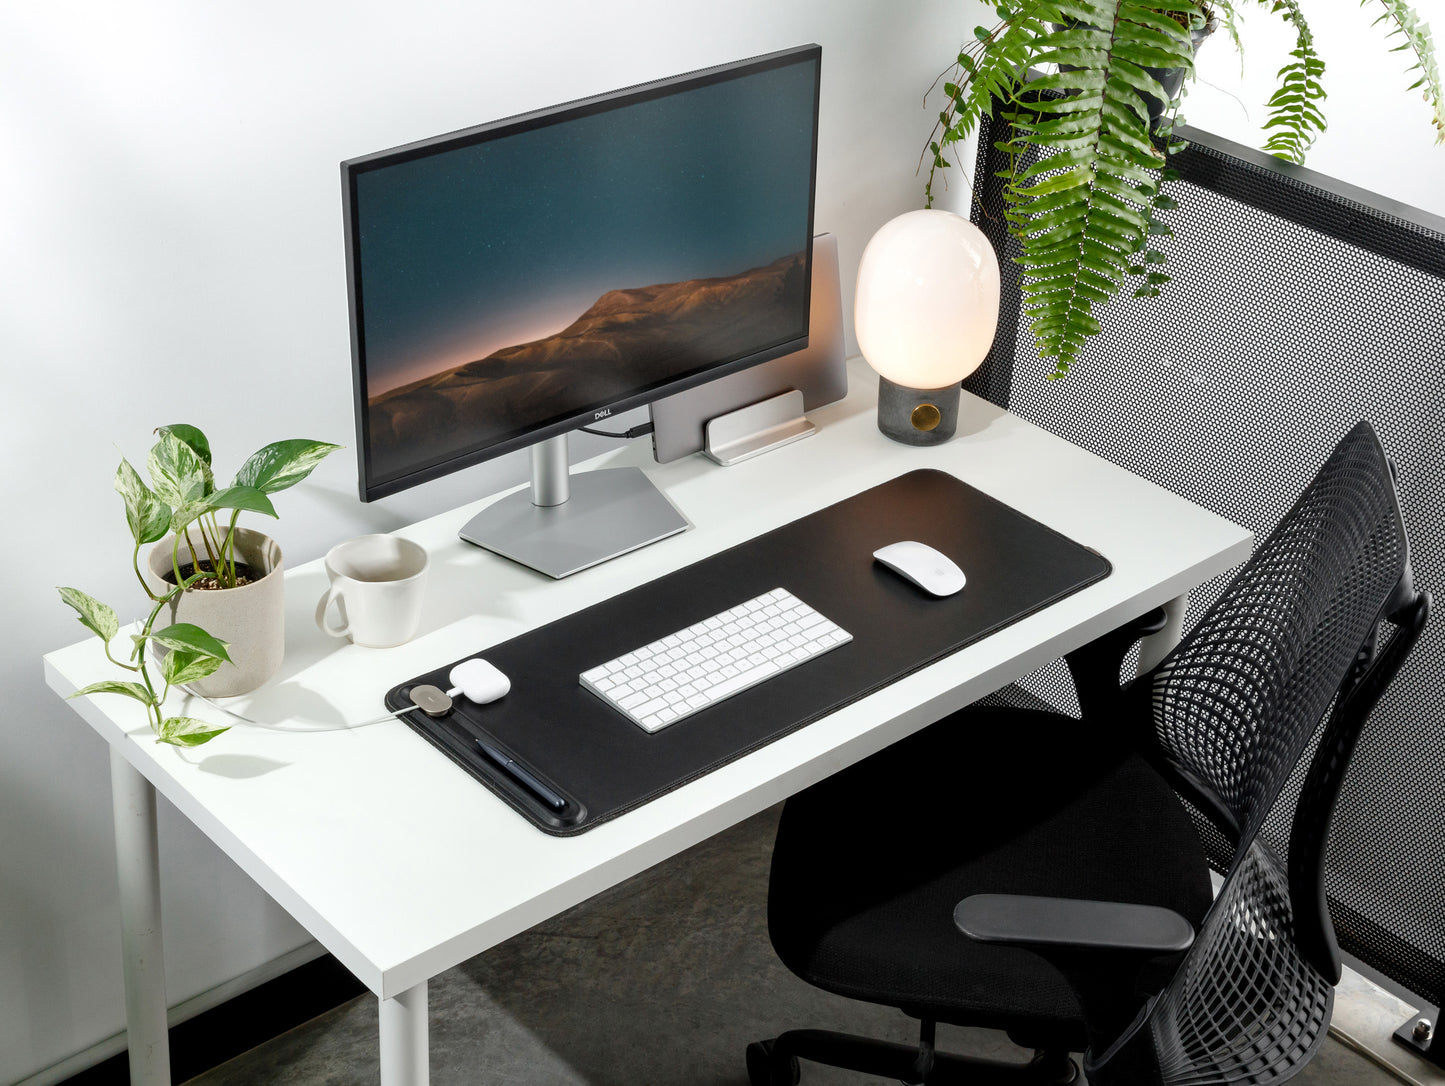 Desk Mat - Neoprene desk mat with anti-slip backing